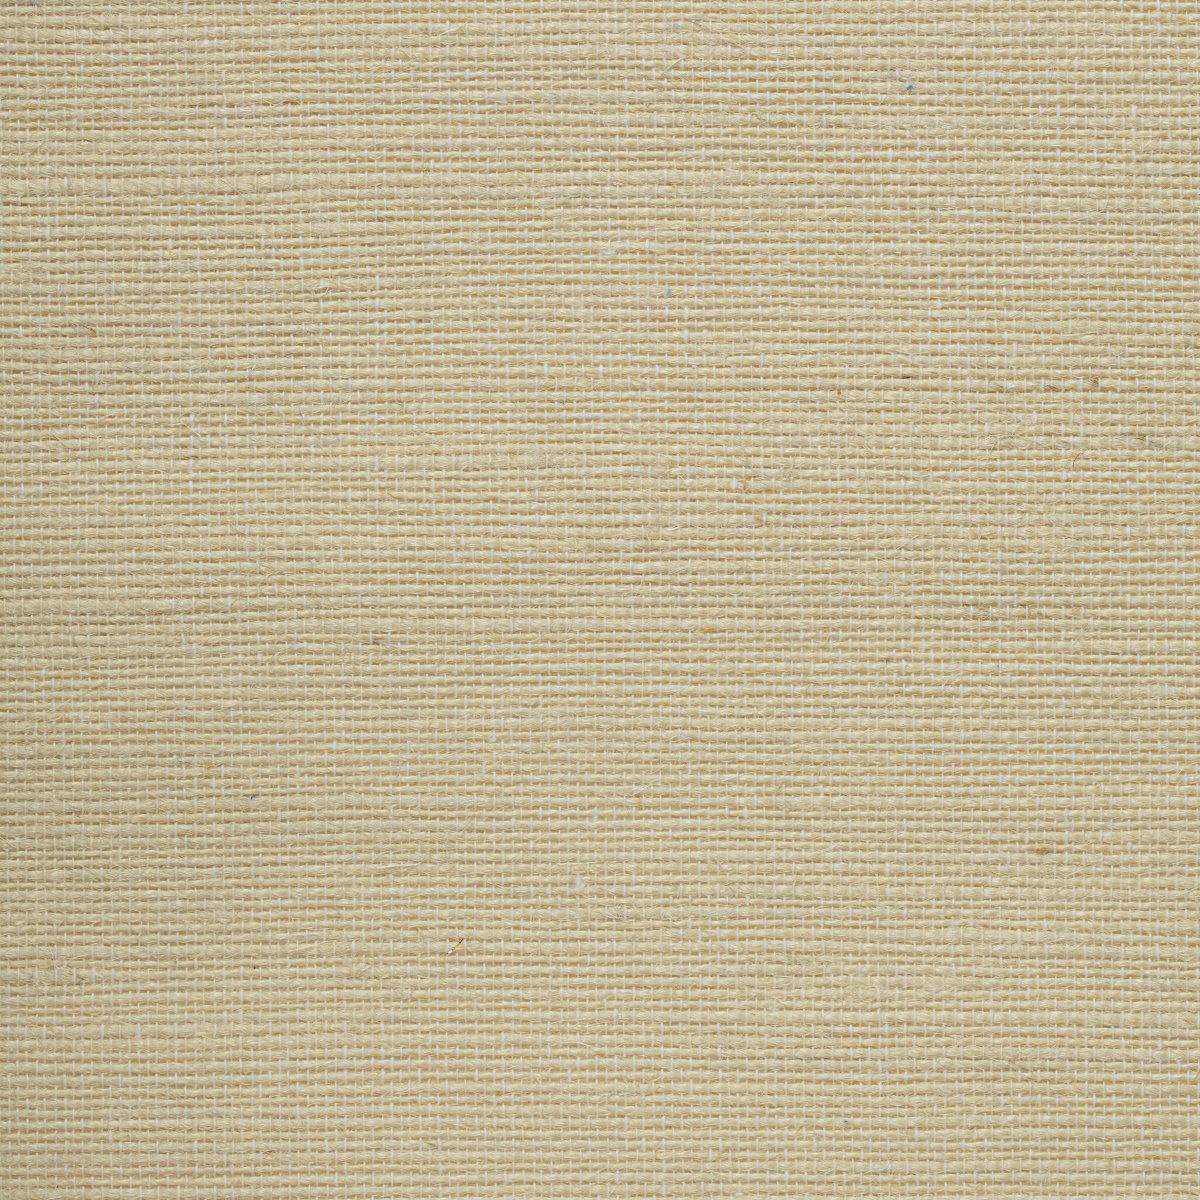 Rustic Pale Beige Jute Natural Grasscloth Wallpaper Roll 18 Ft X 36 In  (5.5m X 91.5cm), 54 Sq Ft (5 sq. m) - Dundee Deco